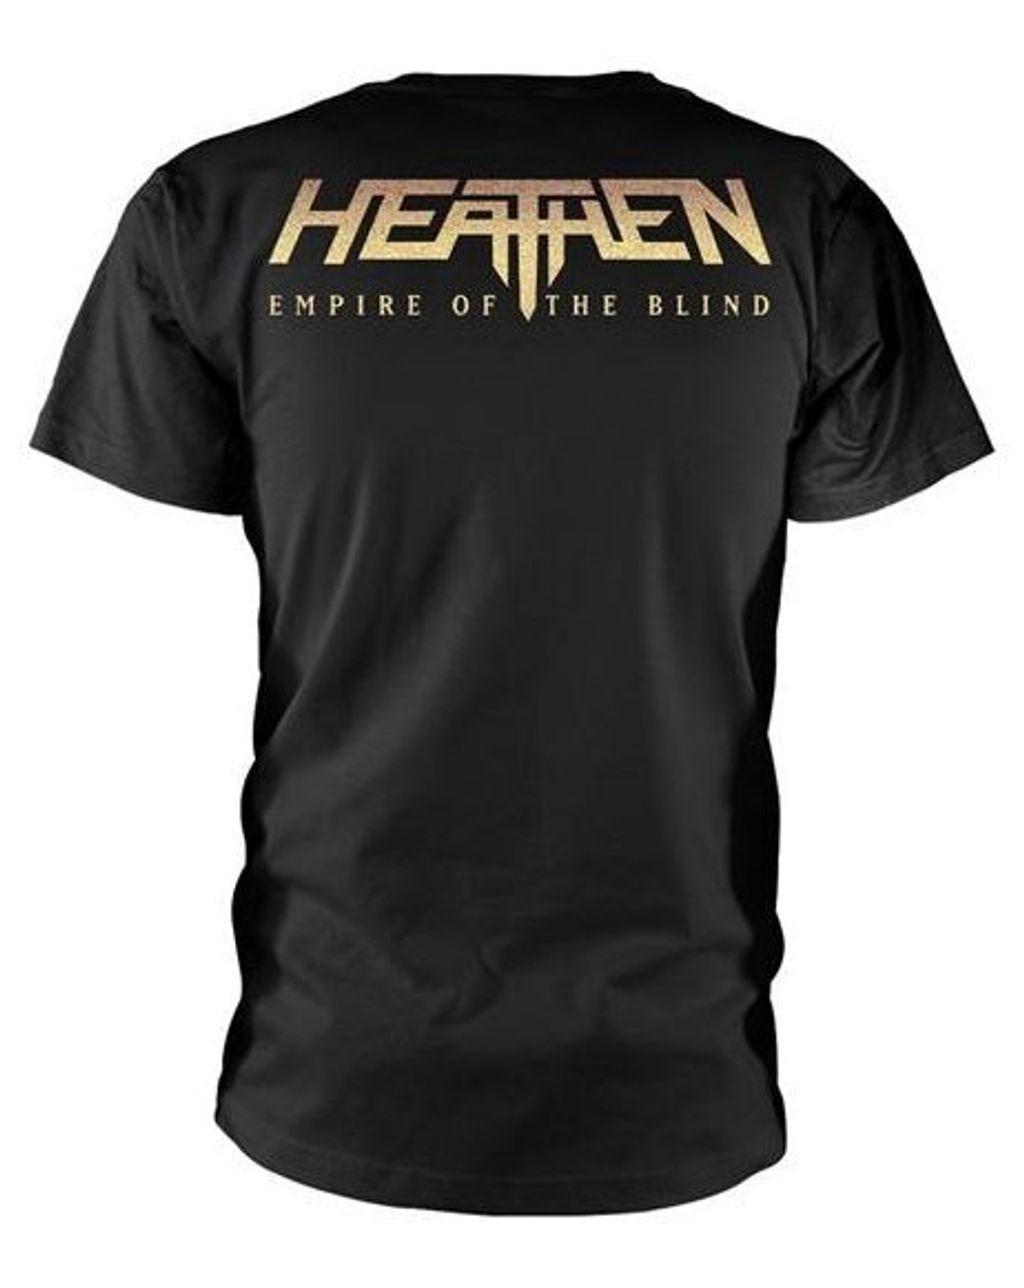 HEATHEN Empire Crest Tshirt (size M)2